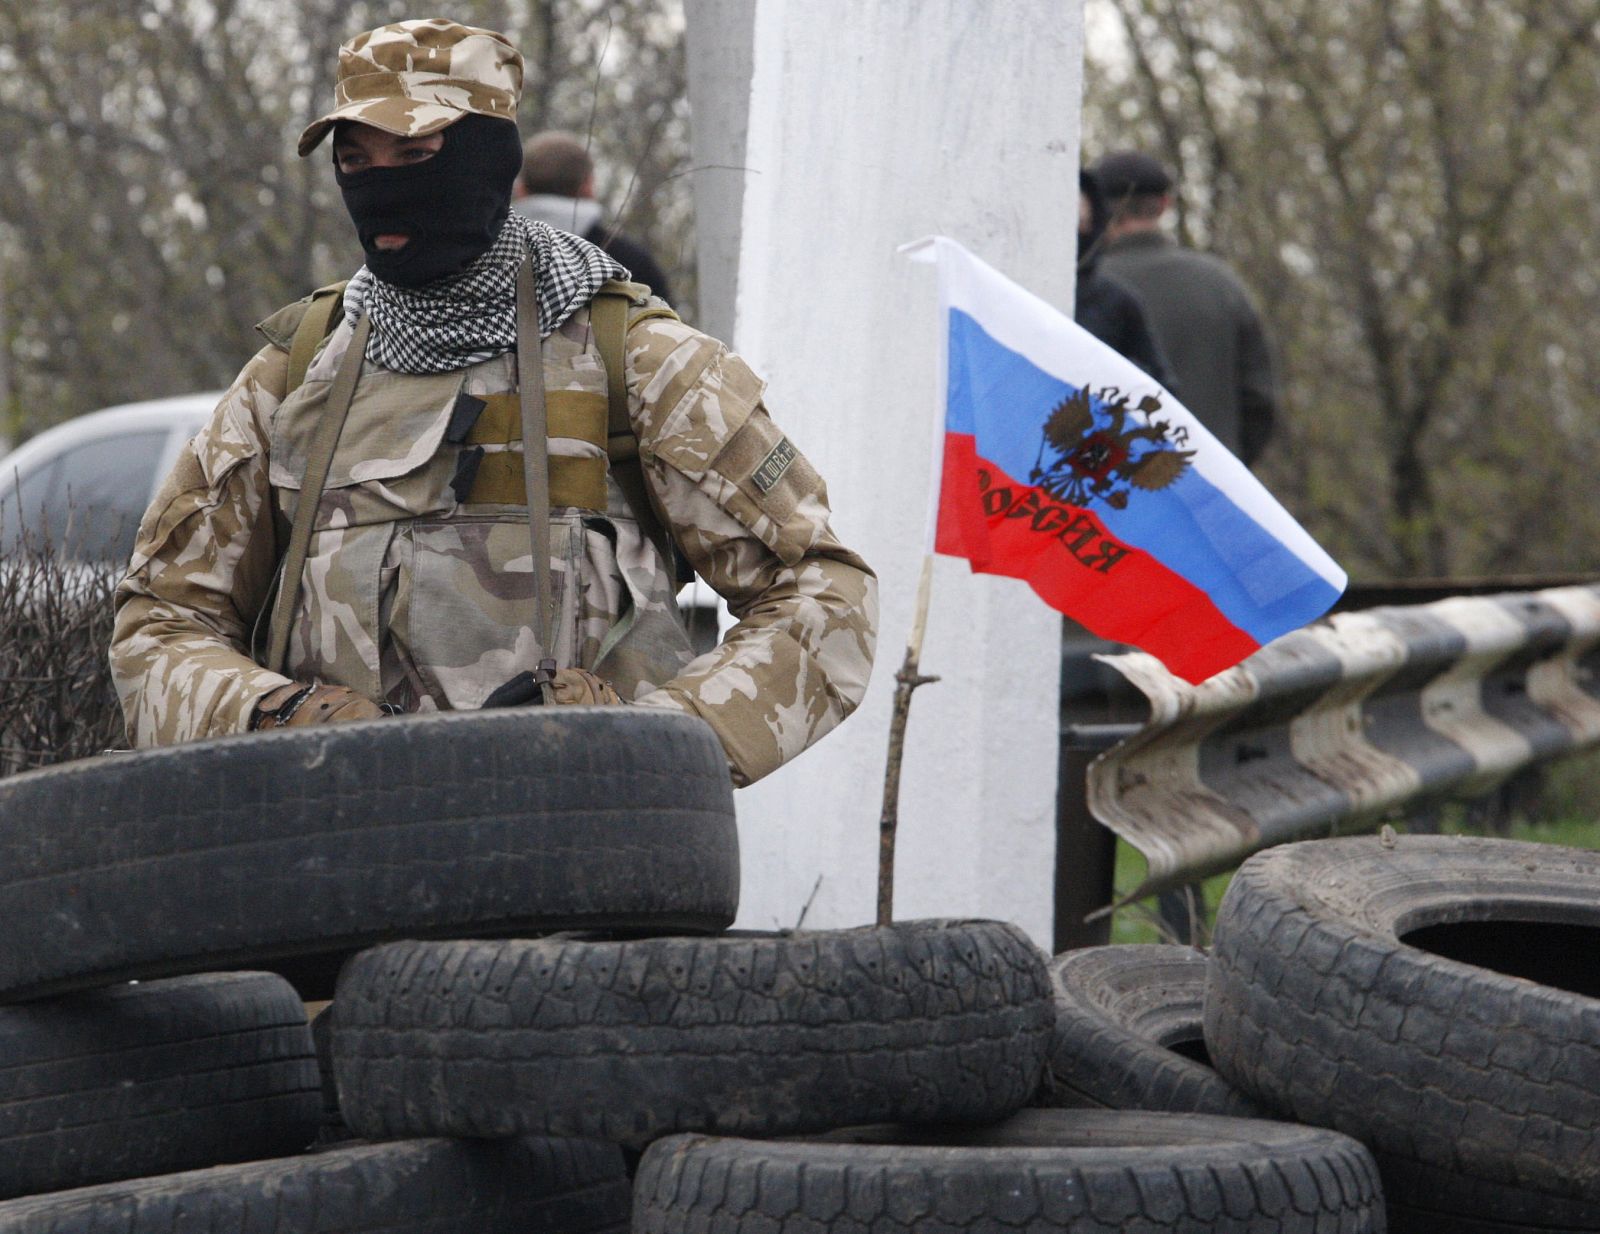 Un miliciano prorruso vigila un punto de control en la carretera entre Kharkiv y Donetsk, en las proximidades de la ciudad de Slavyansk, tomada por separatistas el 12 de abril de 2014